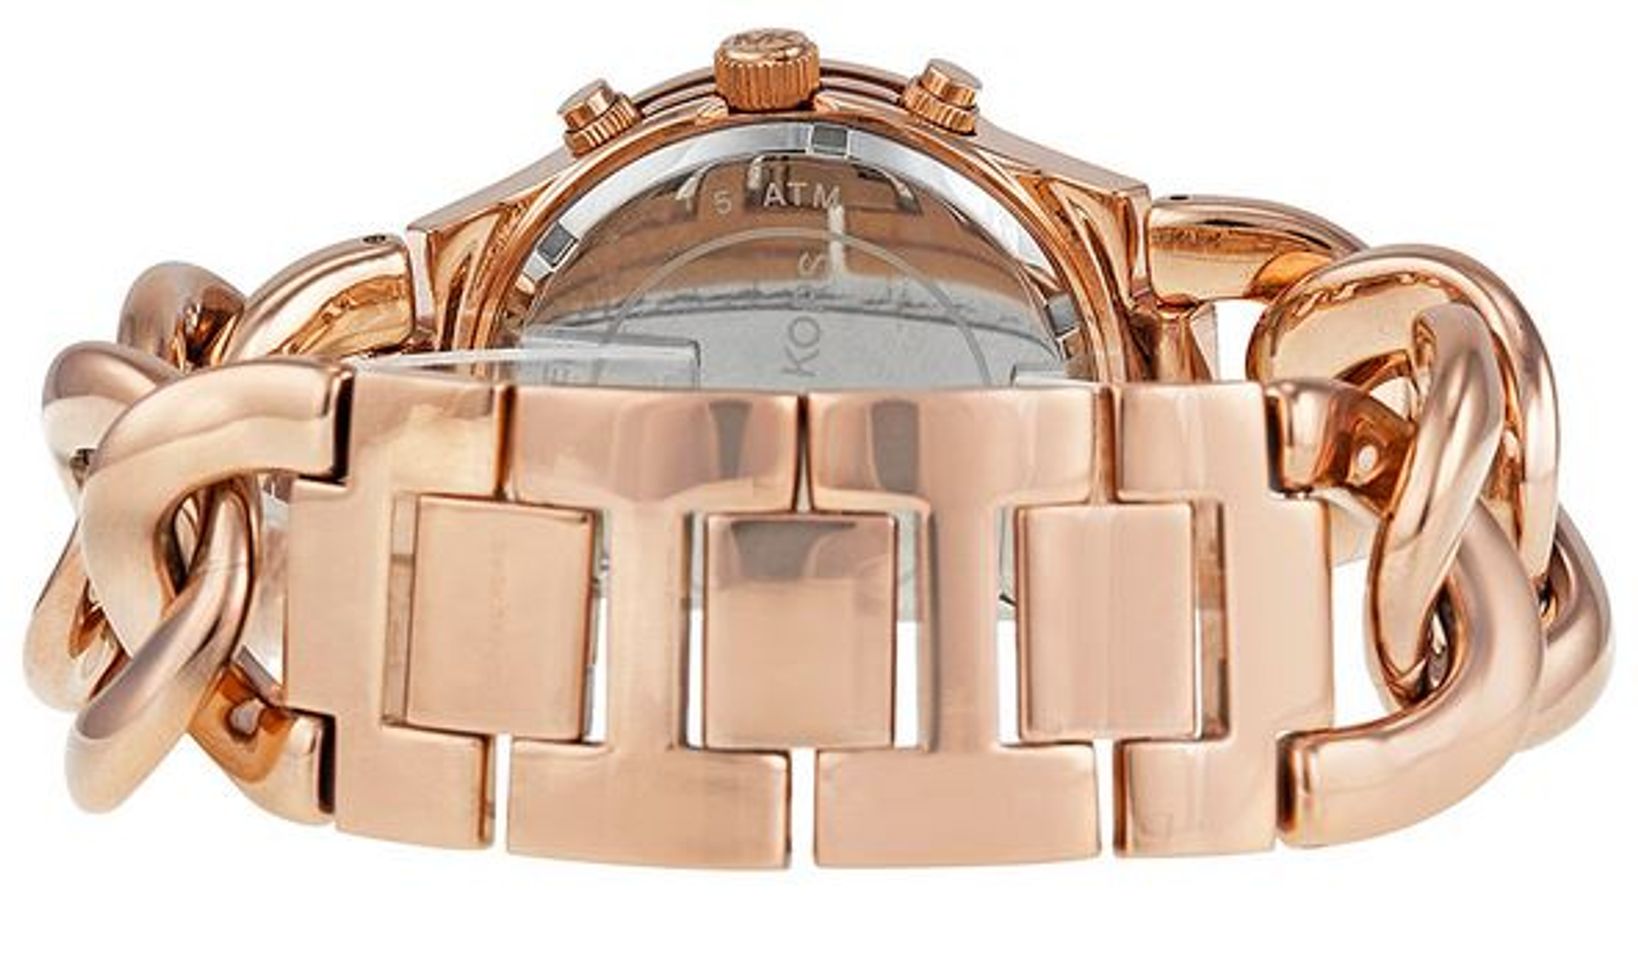 Chiếc đồng hồ Micharl Kors nữ này được thiết kế với dây màu vàng hồng đầy mê hoặc